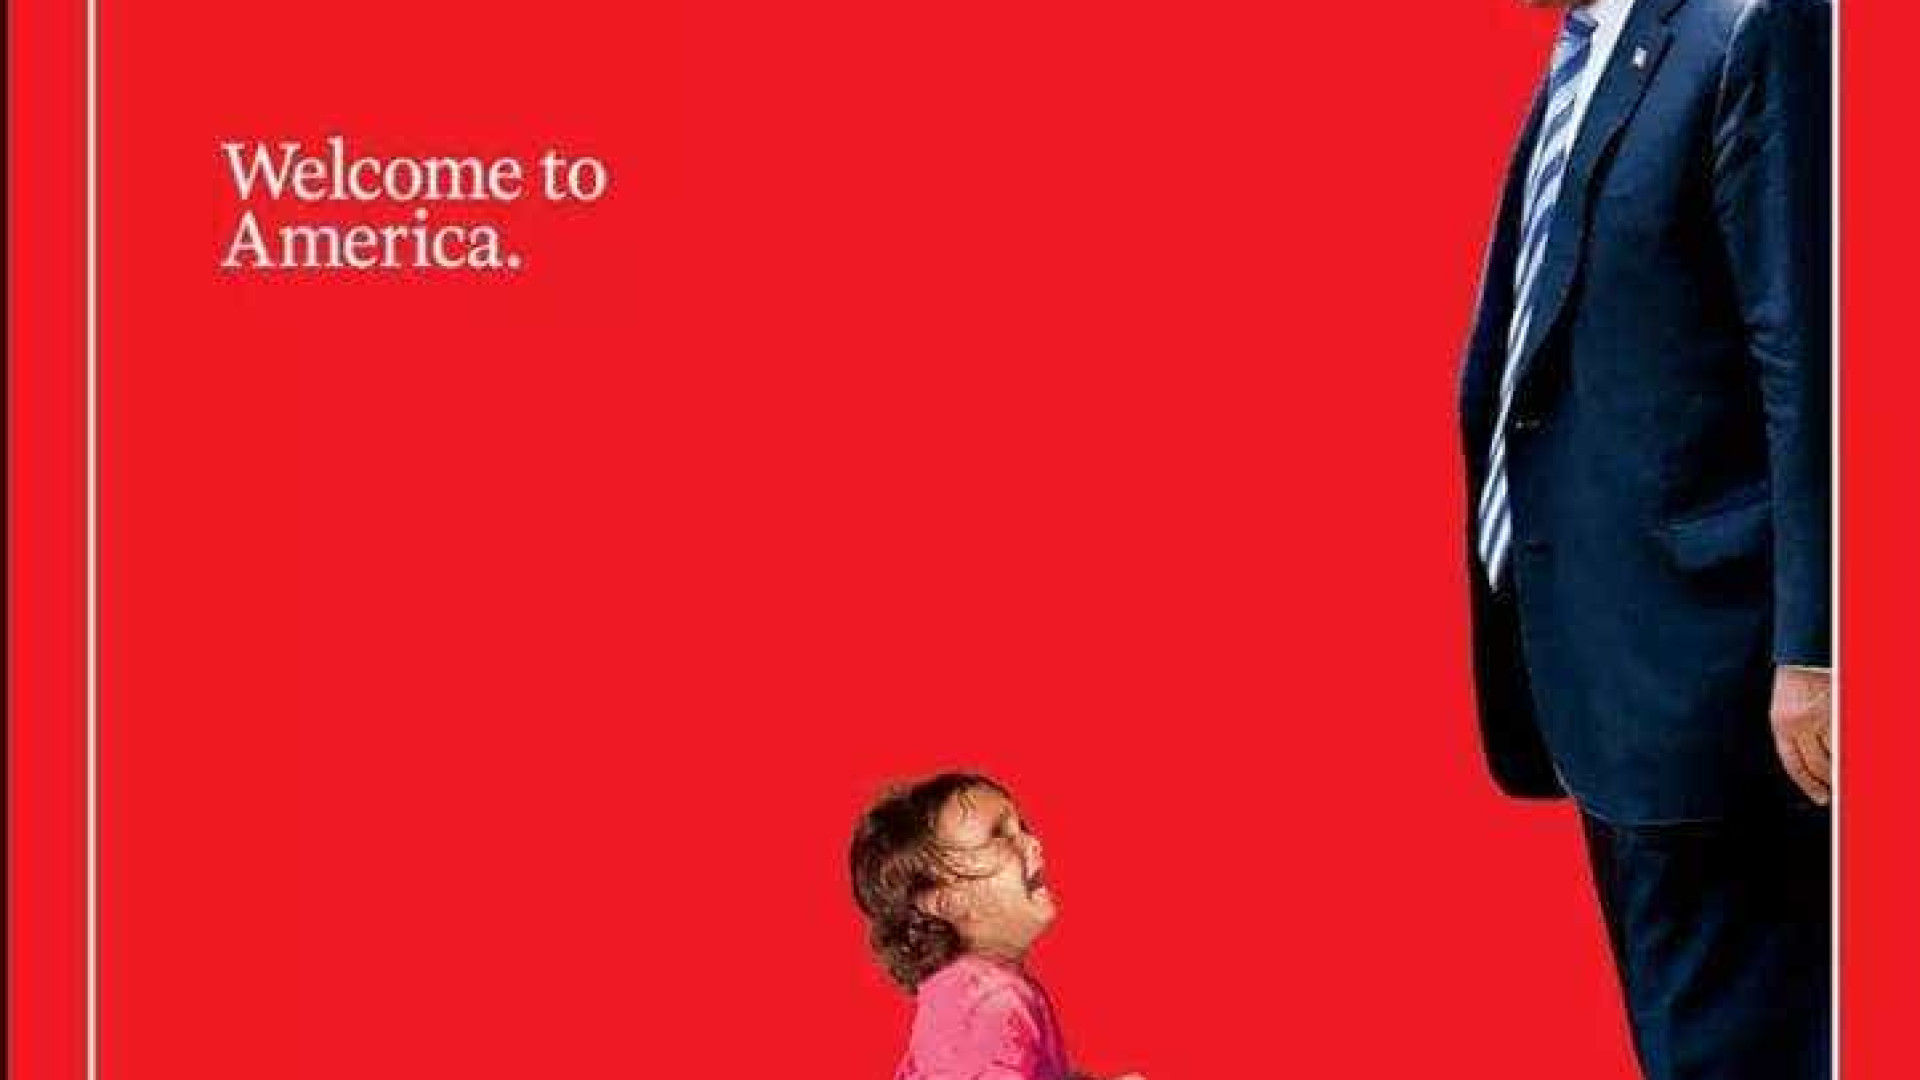 Revista Time faz capa com Trump encarando crianÃ§a imigrante